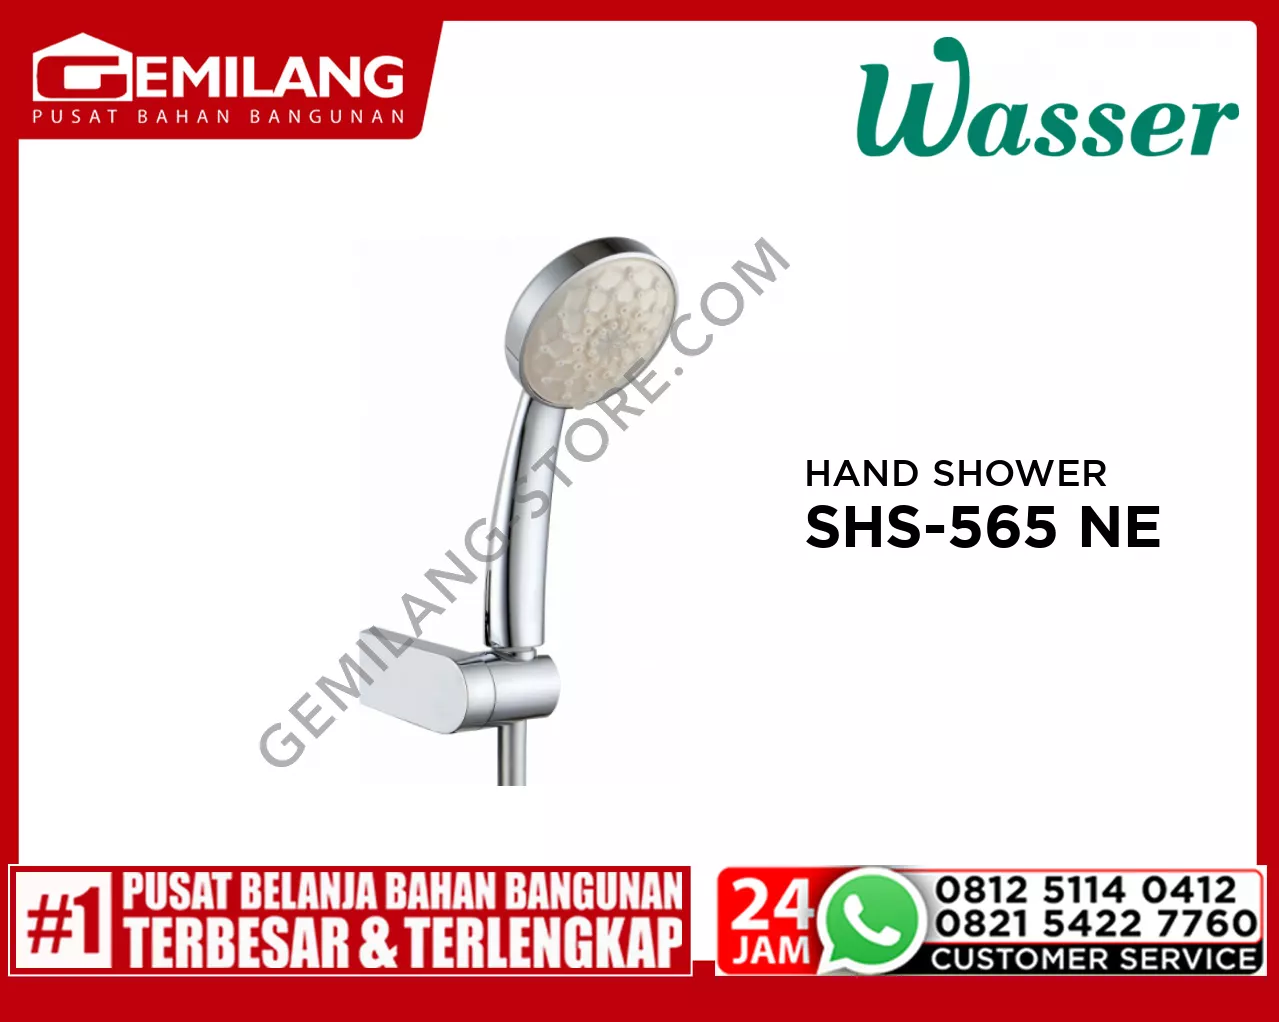 WASSER HAND SHOWER SHS-565 NEO